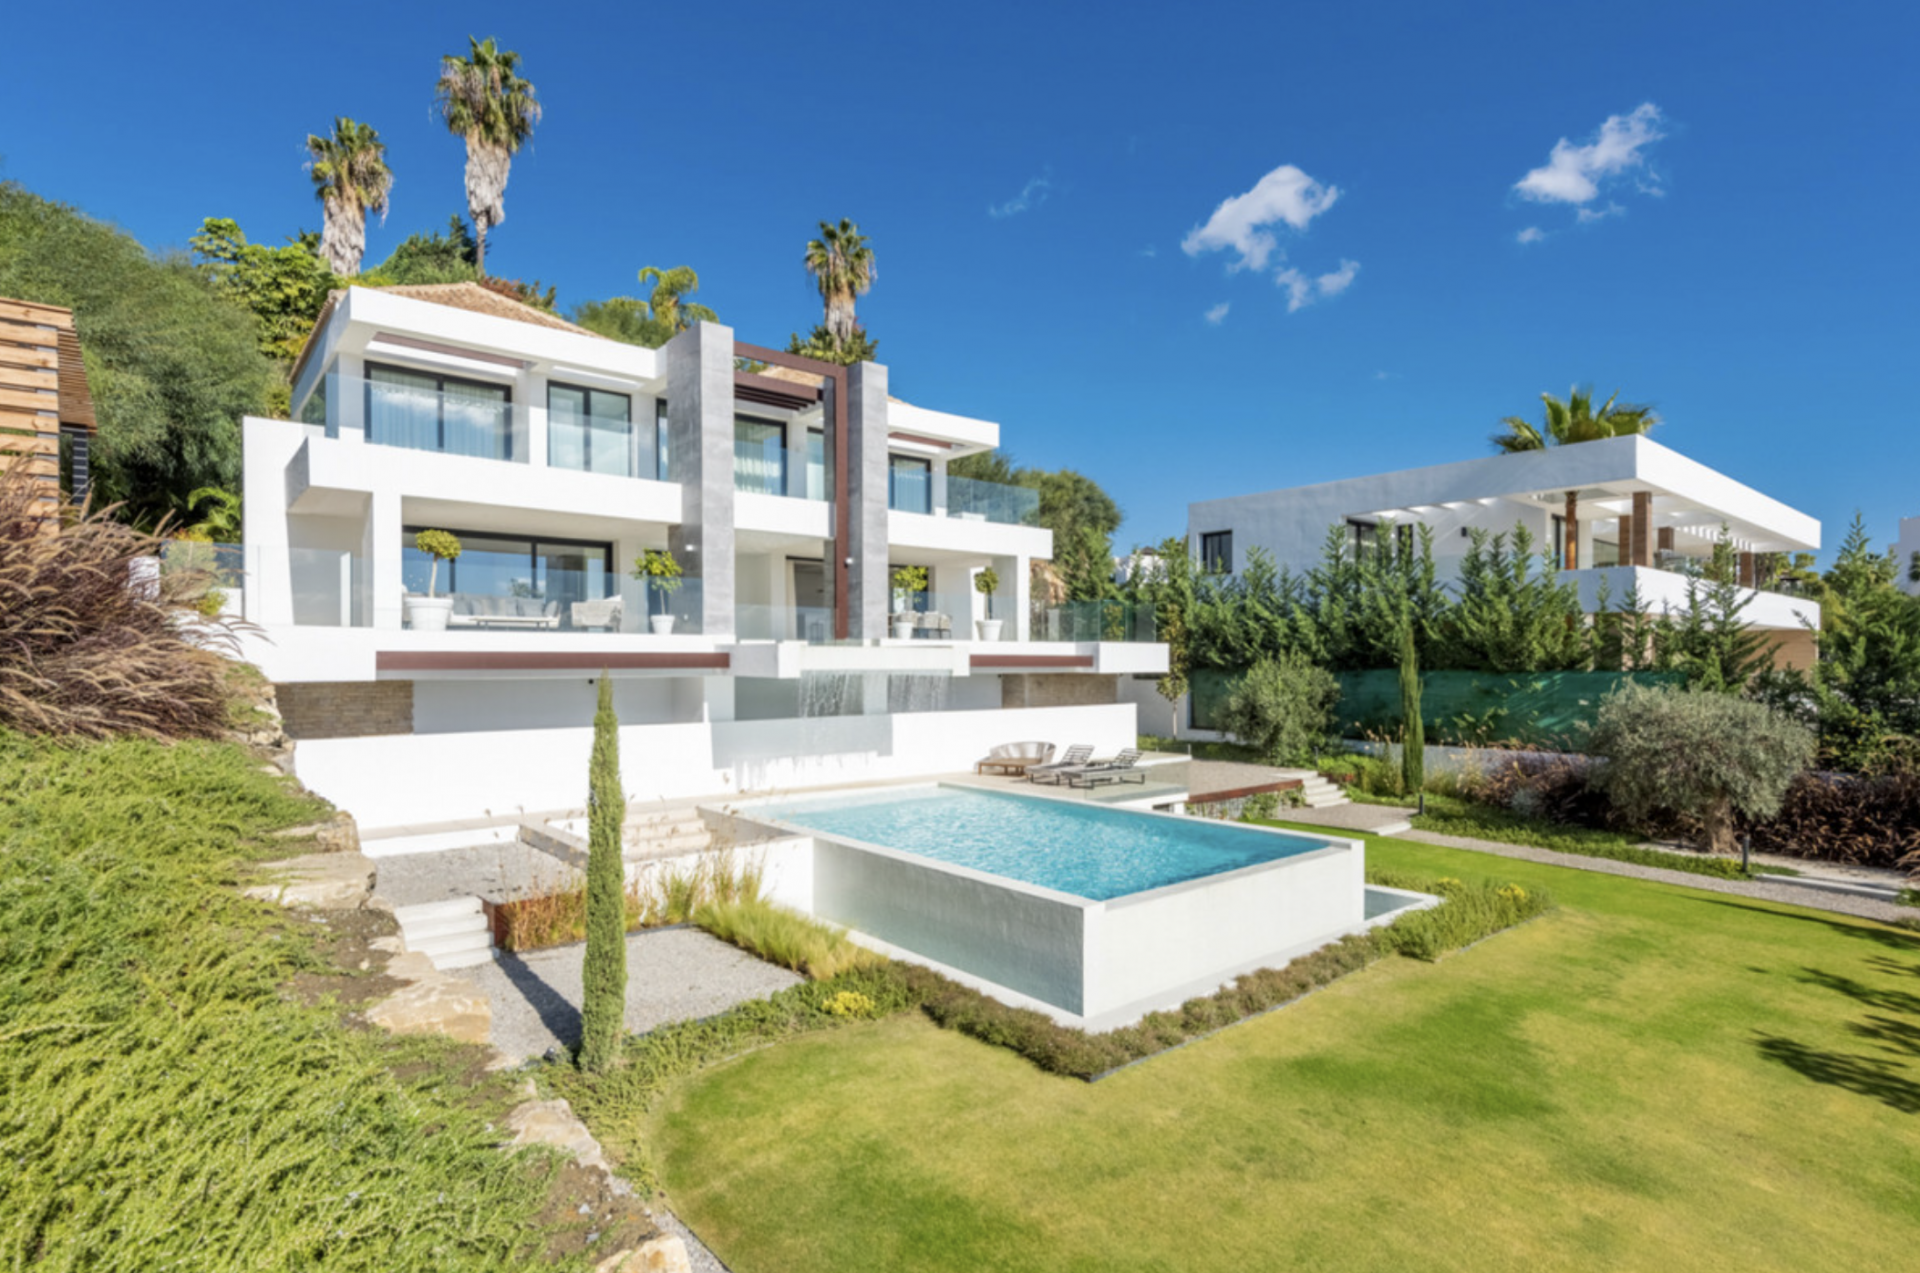 Contemporary south-facing villa with a sophisticated design in La Alqueria